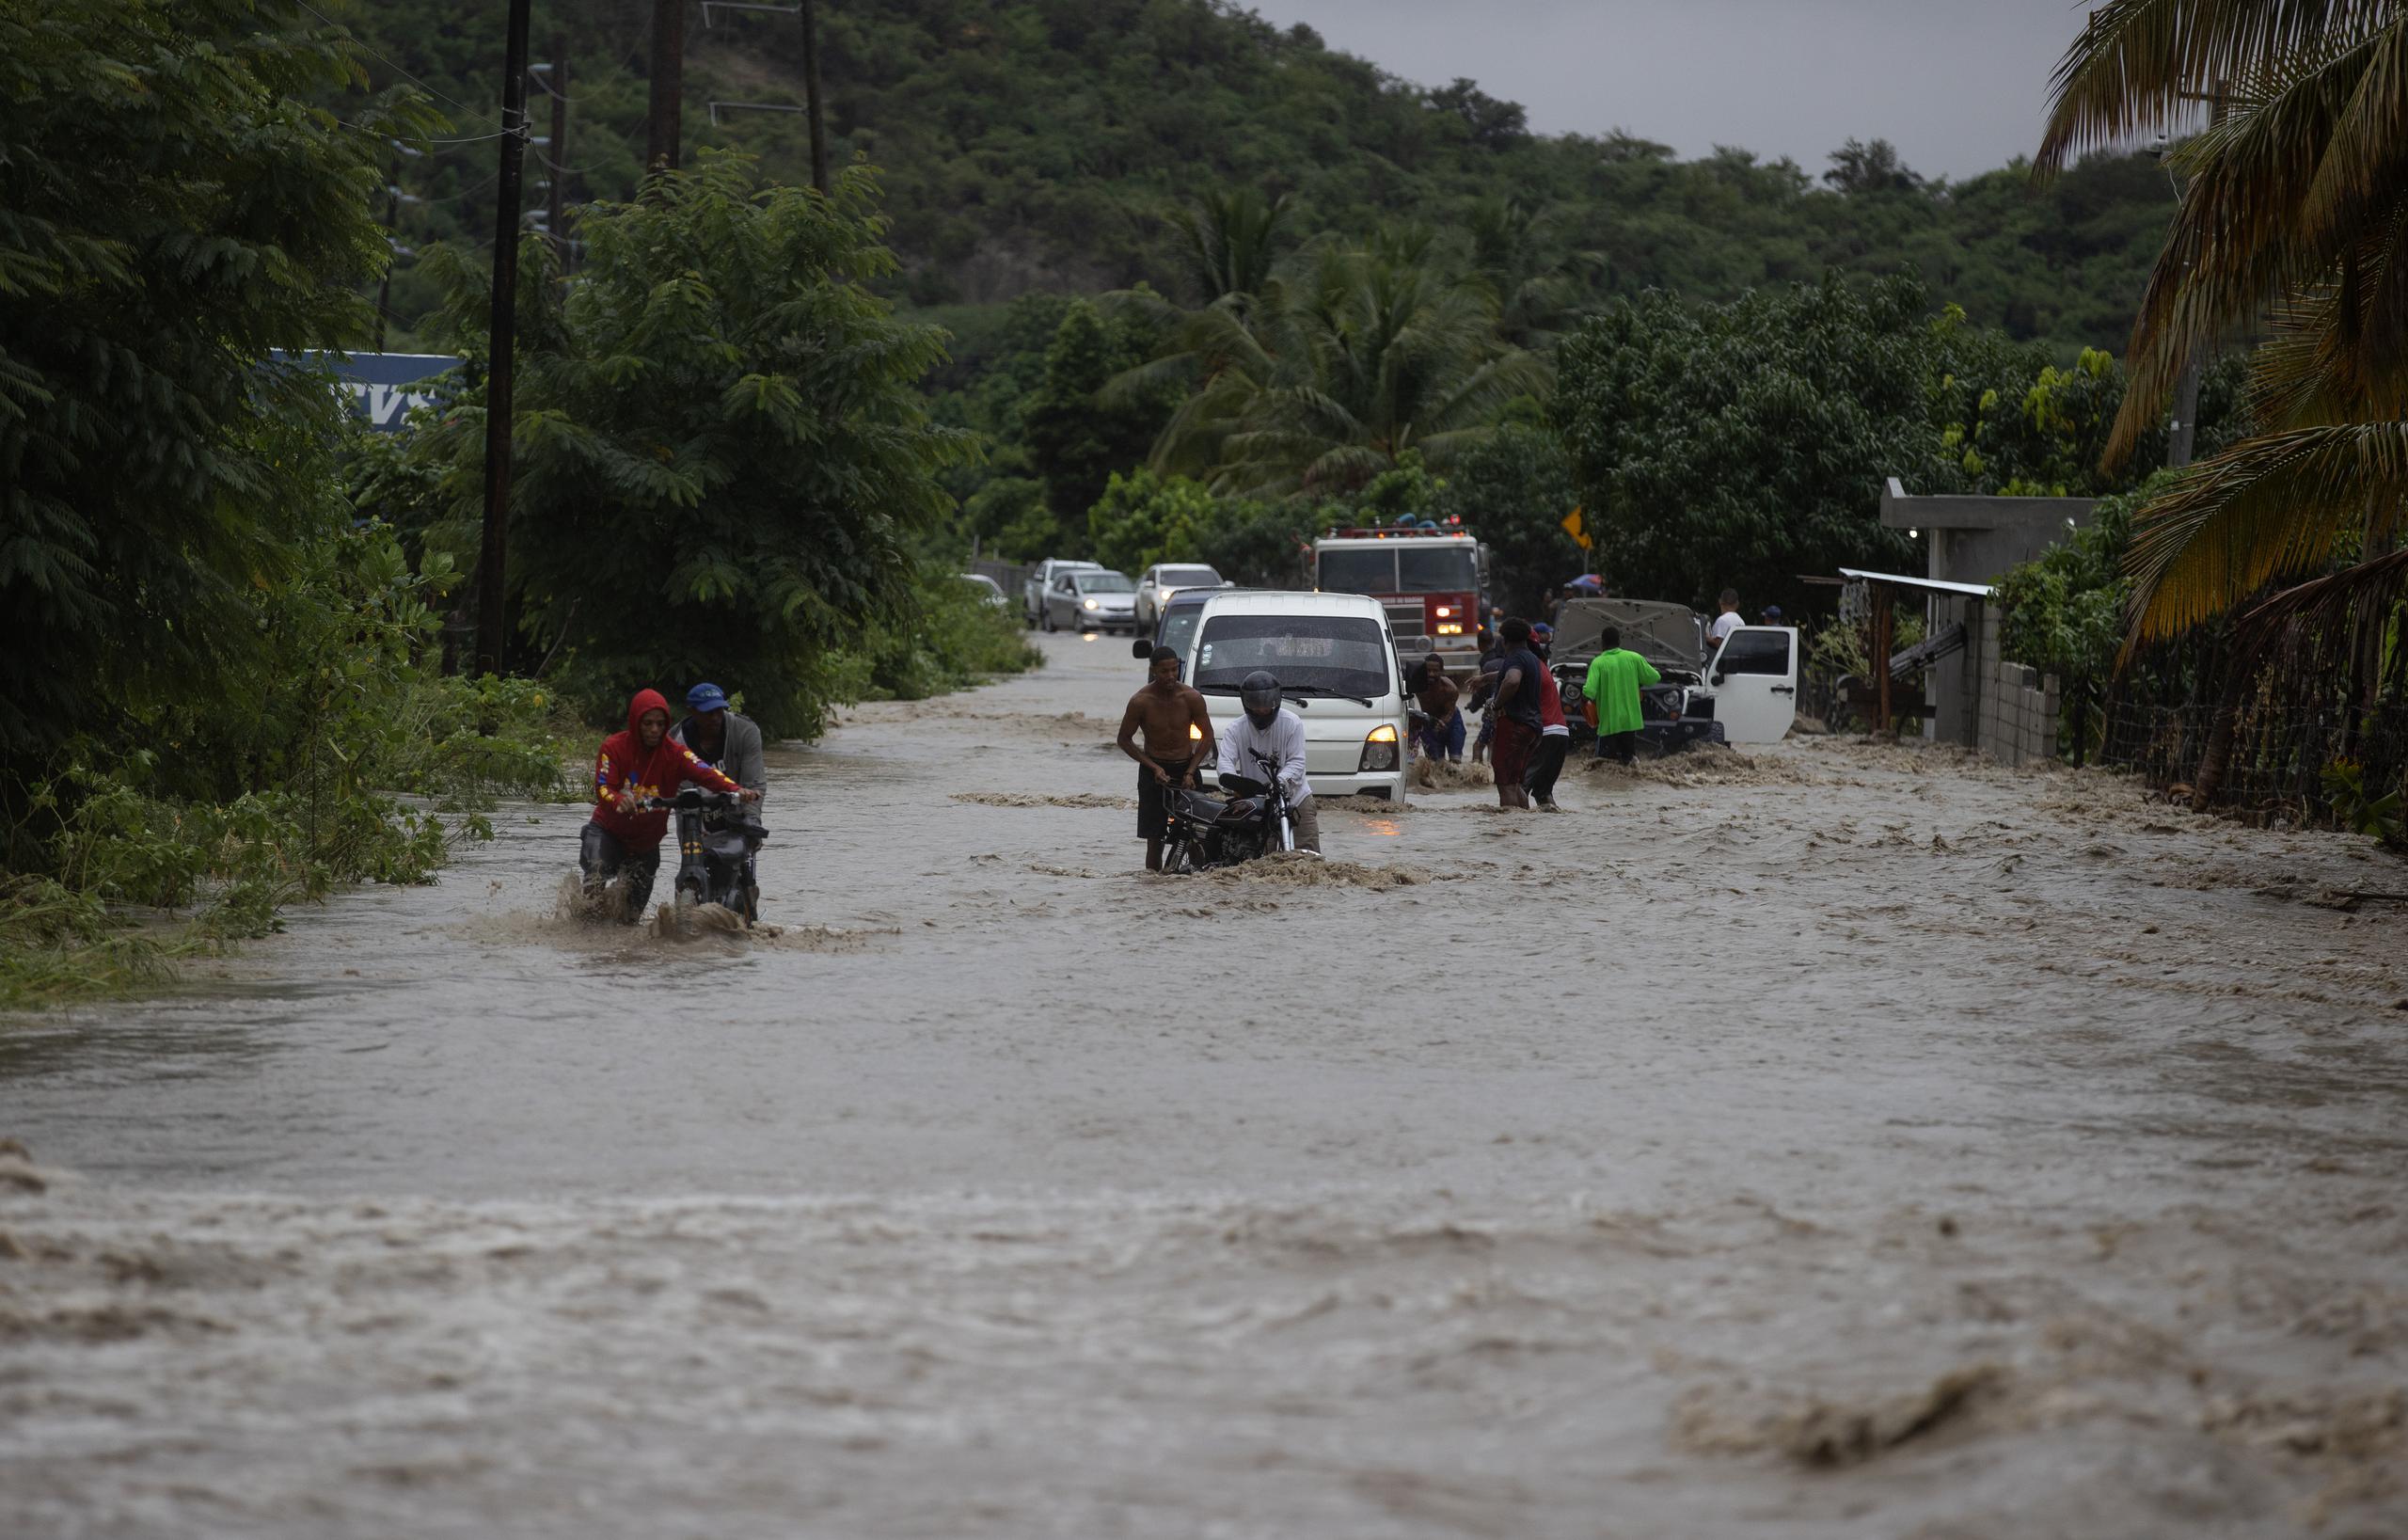 Una de las provincias más afectadas por las precipitaciones es San José de Ocoa, donde colapsó el puente 16 de agosto del municipio de Sabana Larga, dejando una persona desaparecida, informó el Centro de Operaciones de Emergencias (COE).